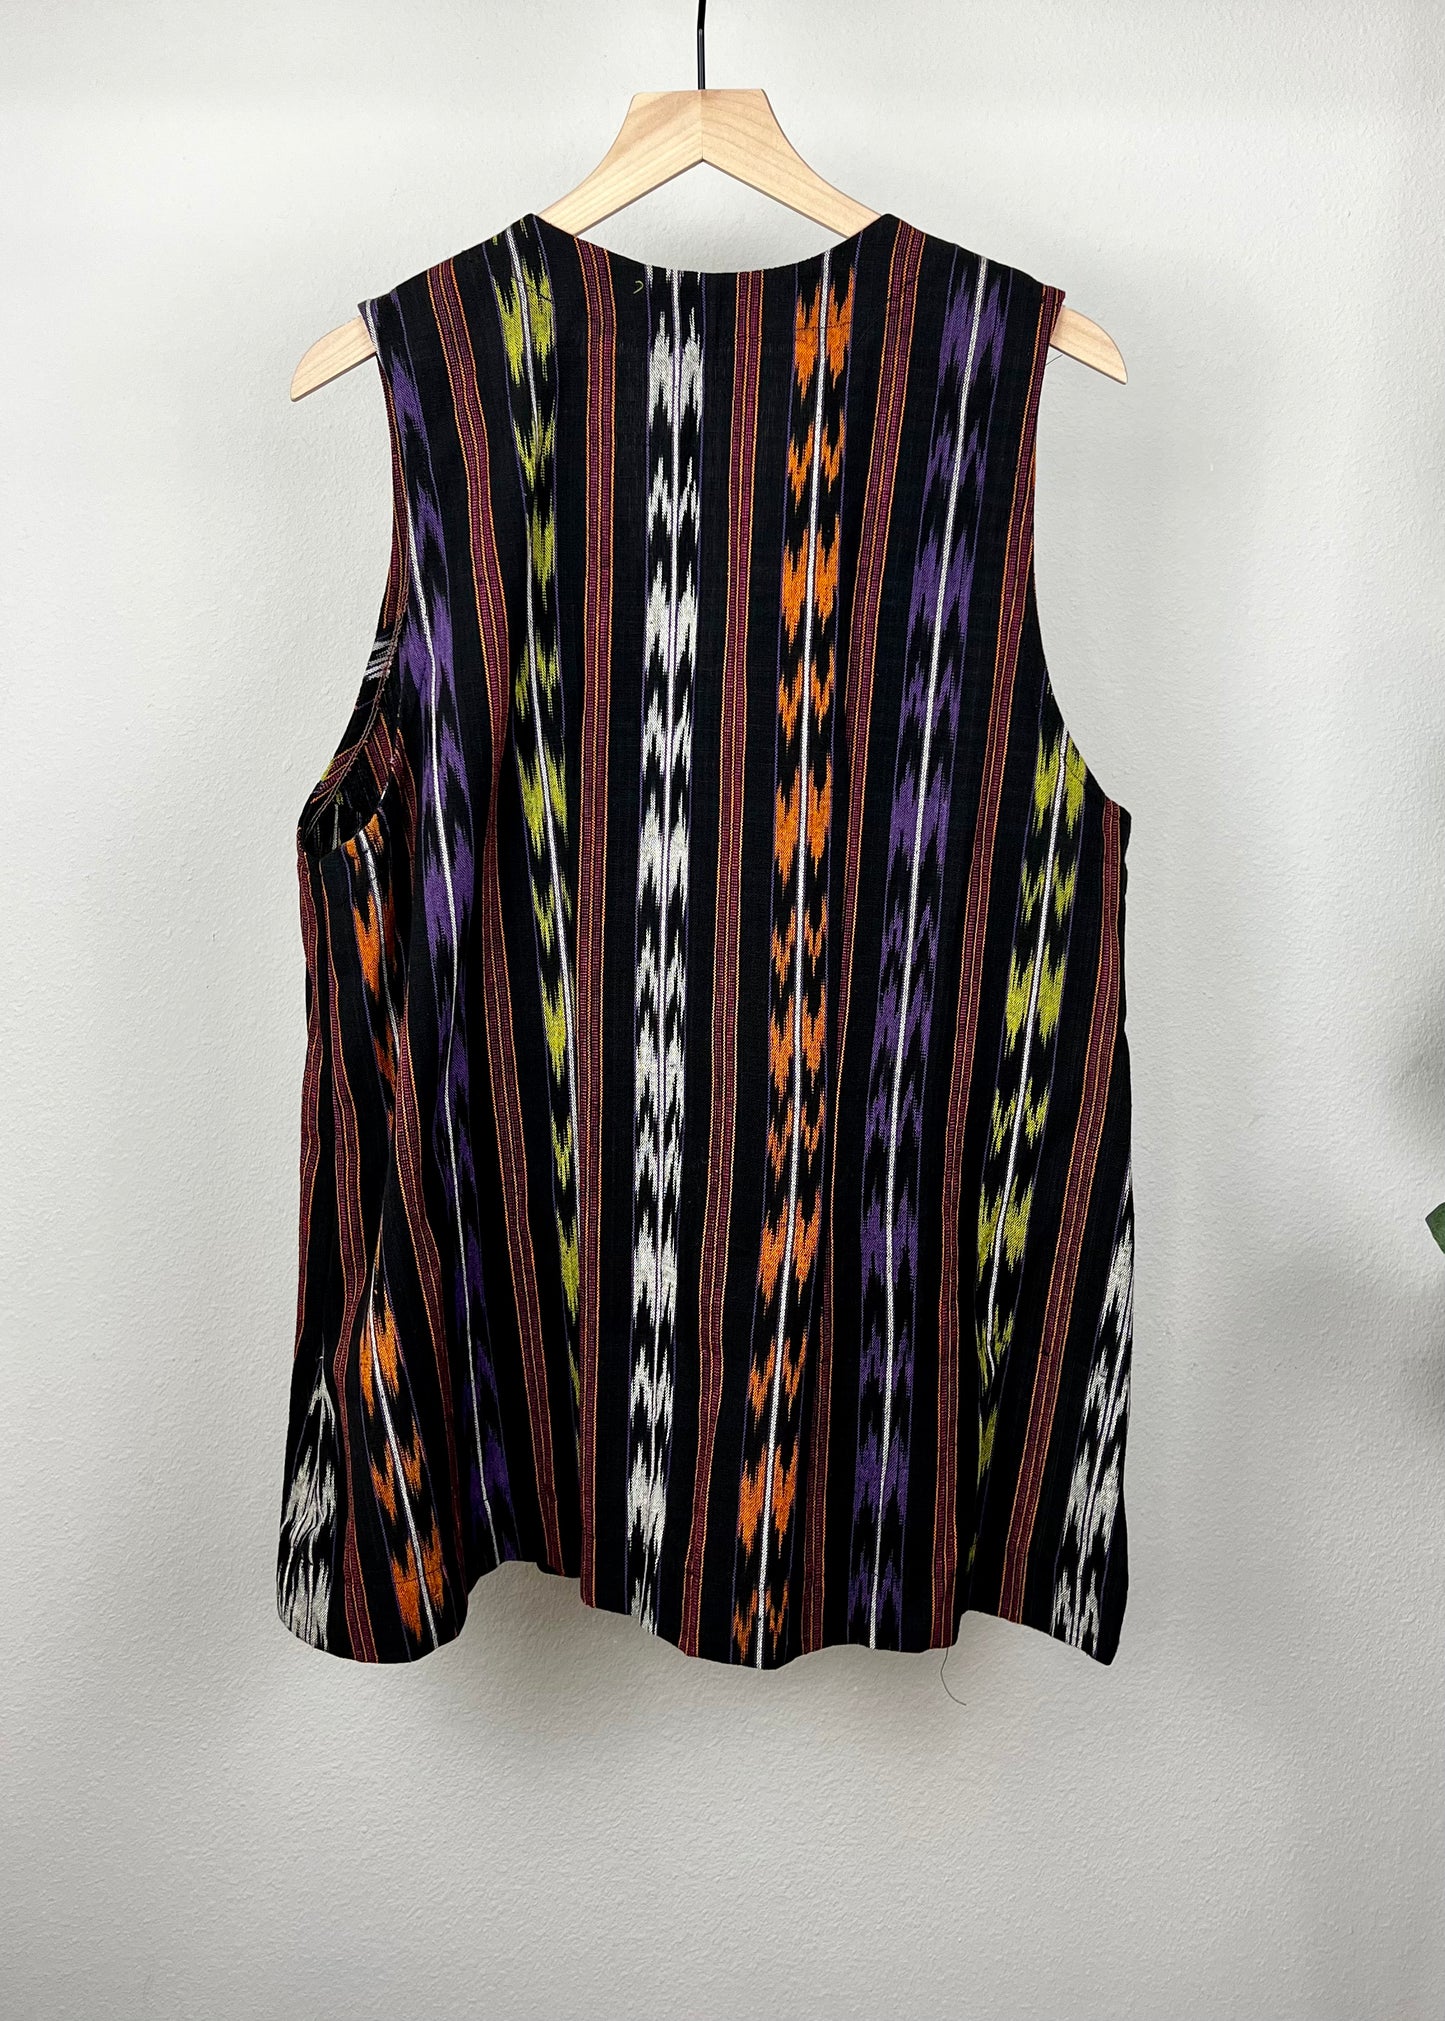 Aztec Style Printed Vest